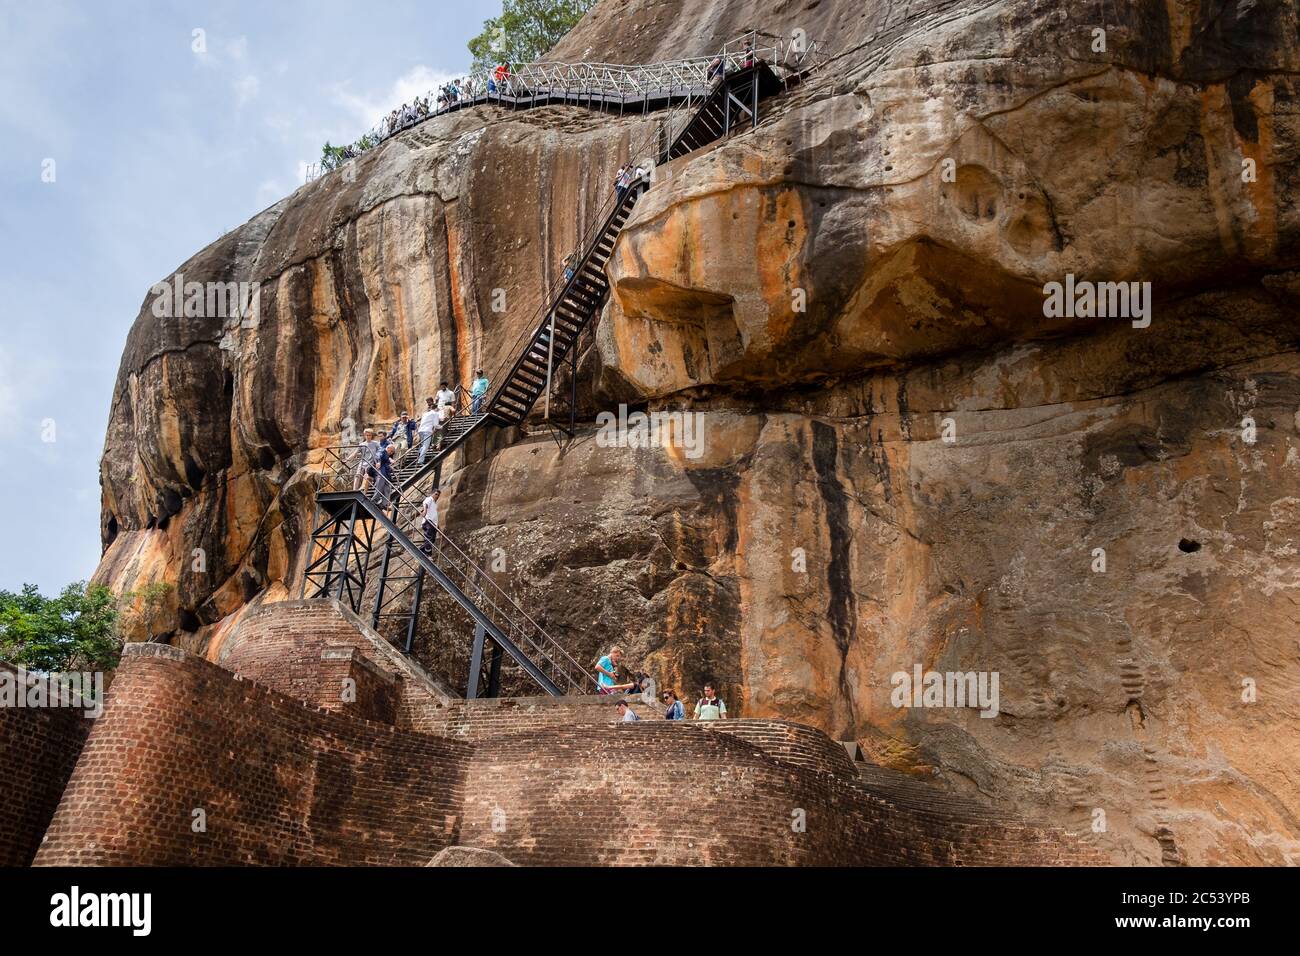 Escaliers escarpés pour monter le rocher de Sigiriya, Sri Lanka Banque D'Images